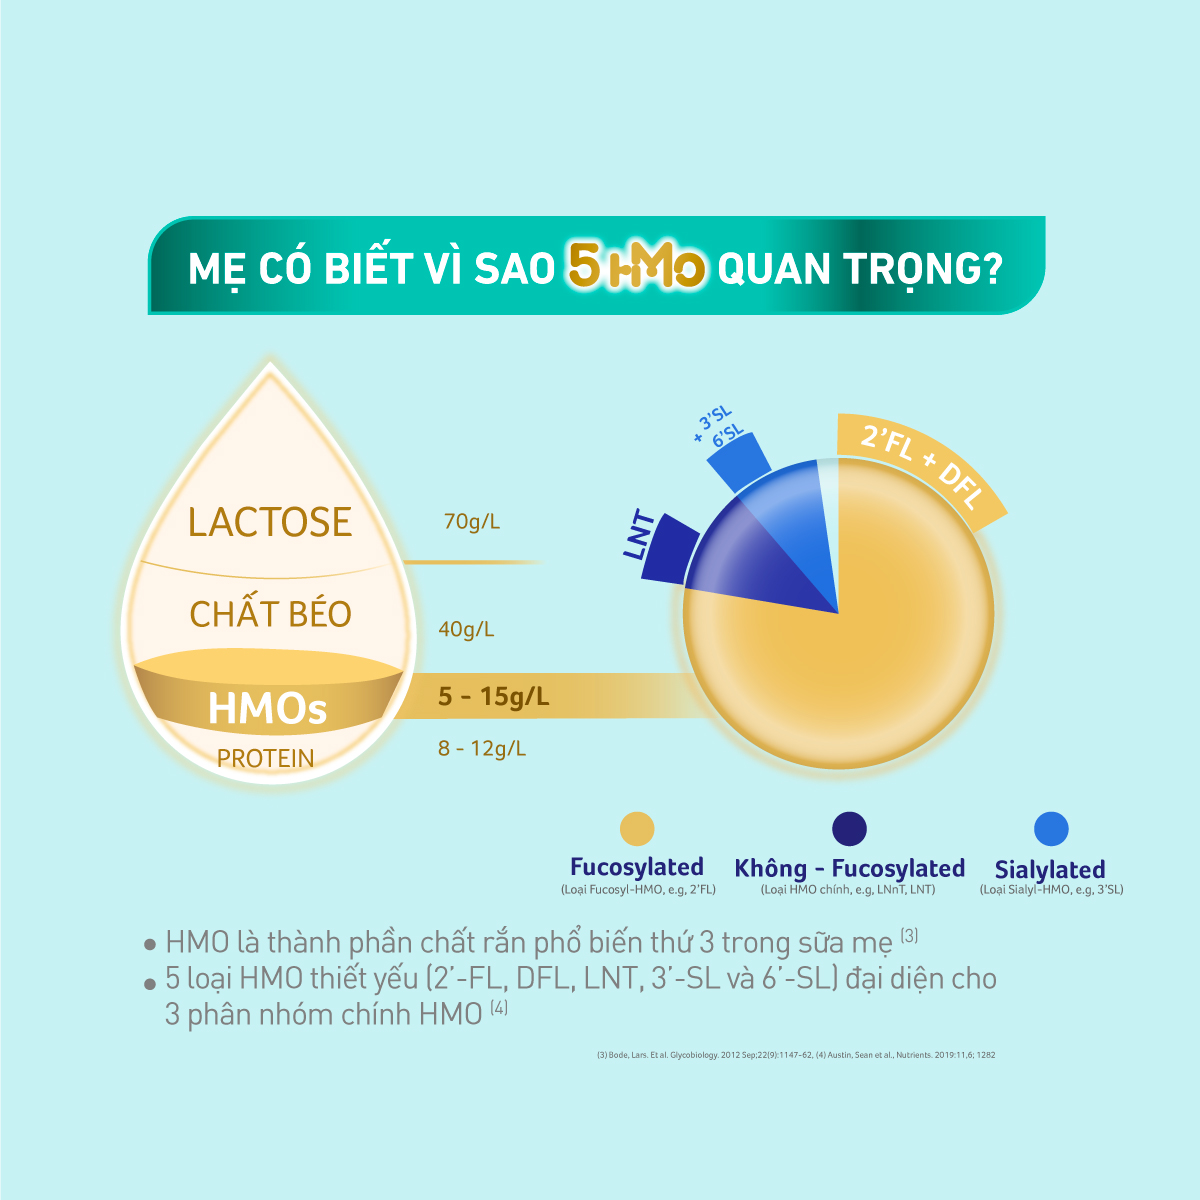 Bộ 2 Lon sữa bột Nestlé NAN OPTIPRO PLUS 4 850g/lon với 5HMO Giúp tiêu hóa tốt + Tăng cường đề kháng Tặng Gấu bông cho bé (2 - 6 tuổi)